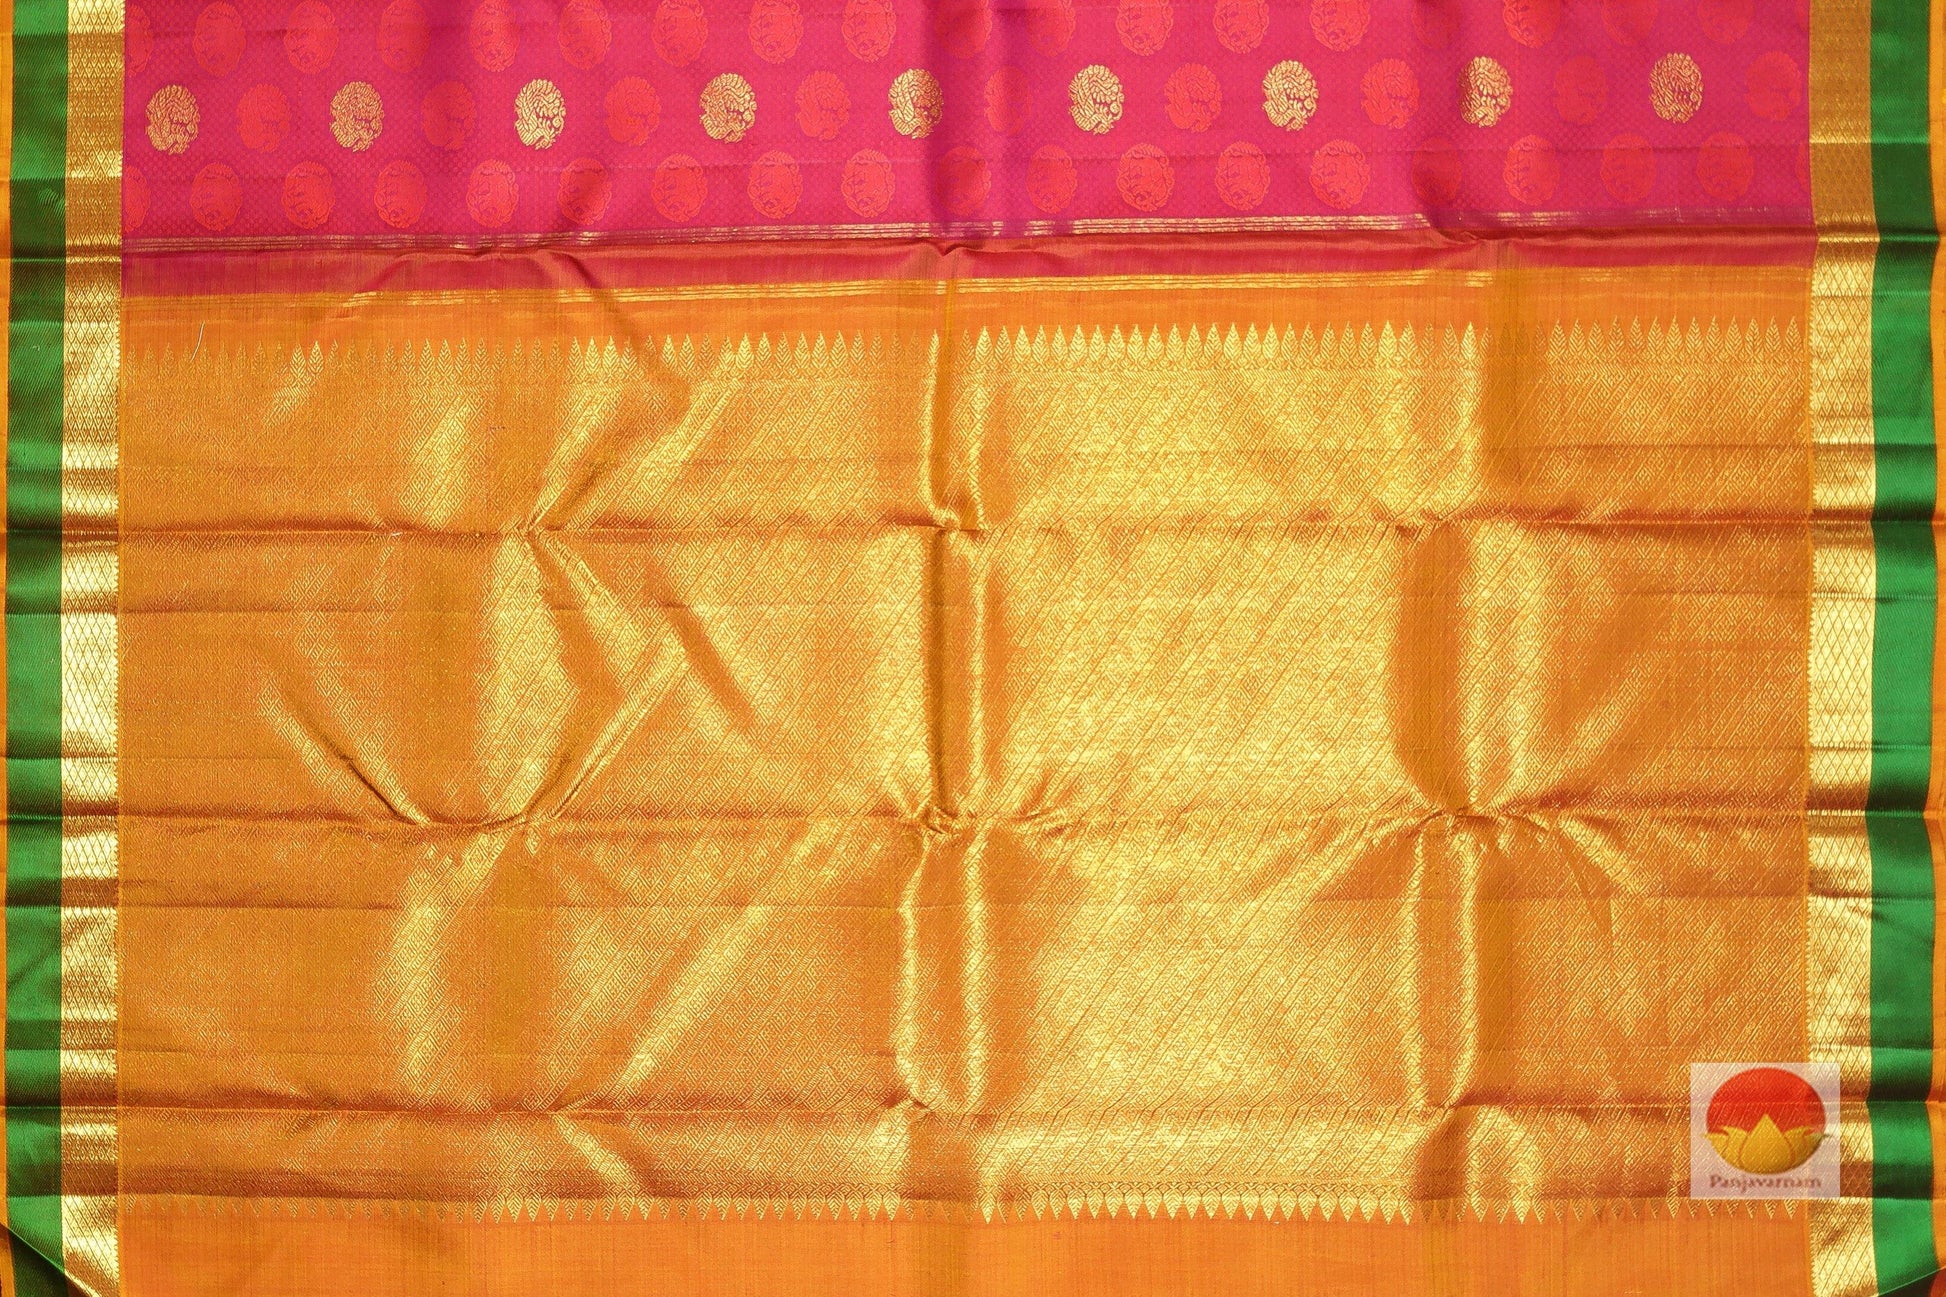 Traditional Design Handwoven Pure Silk Kanjivaram Saree - PV J7492 - Archives - Silk Sari - Panjavarnam